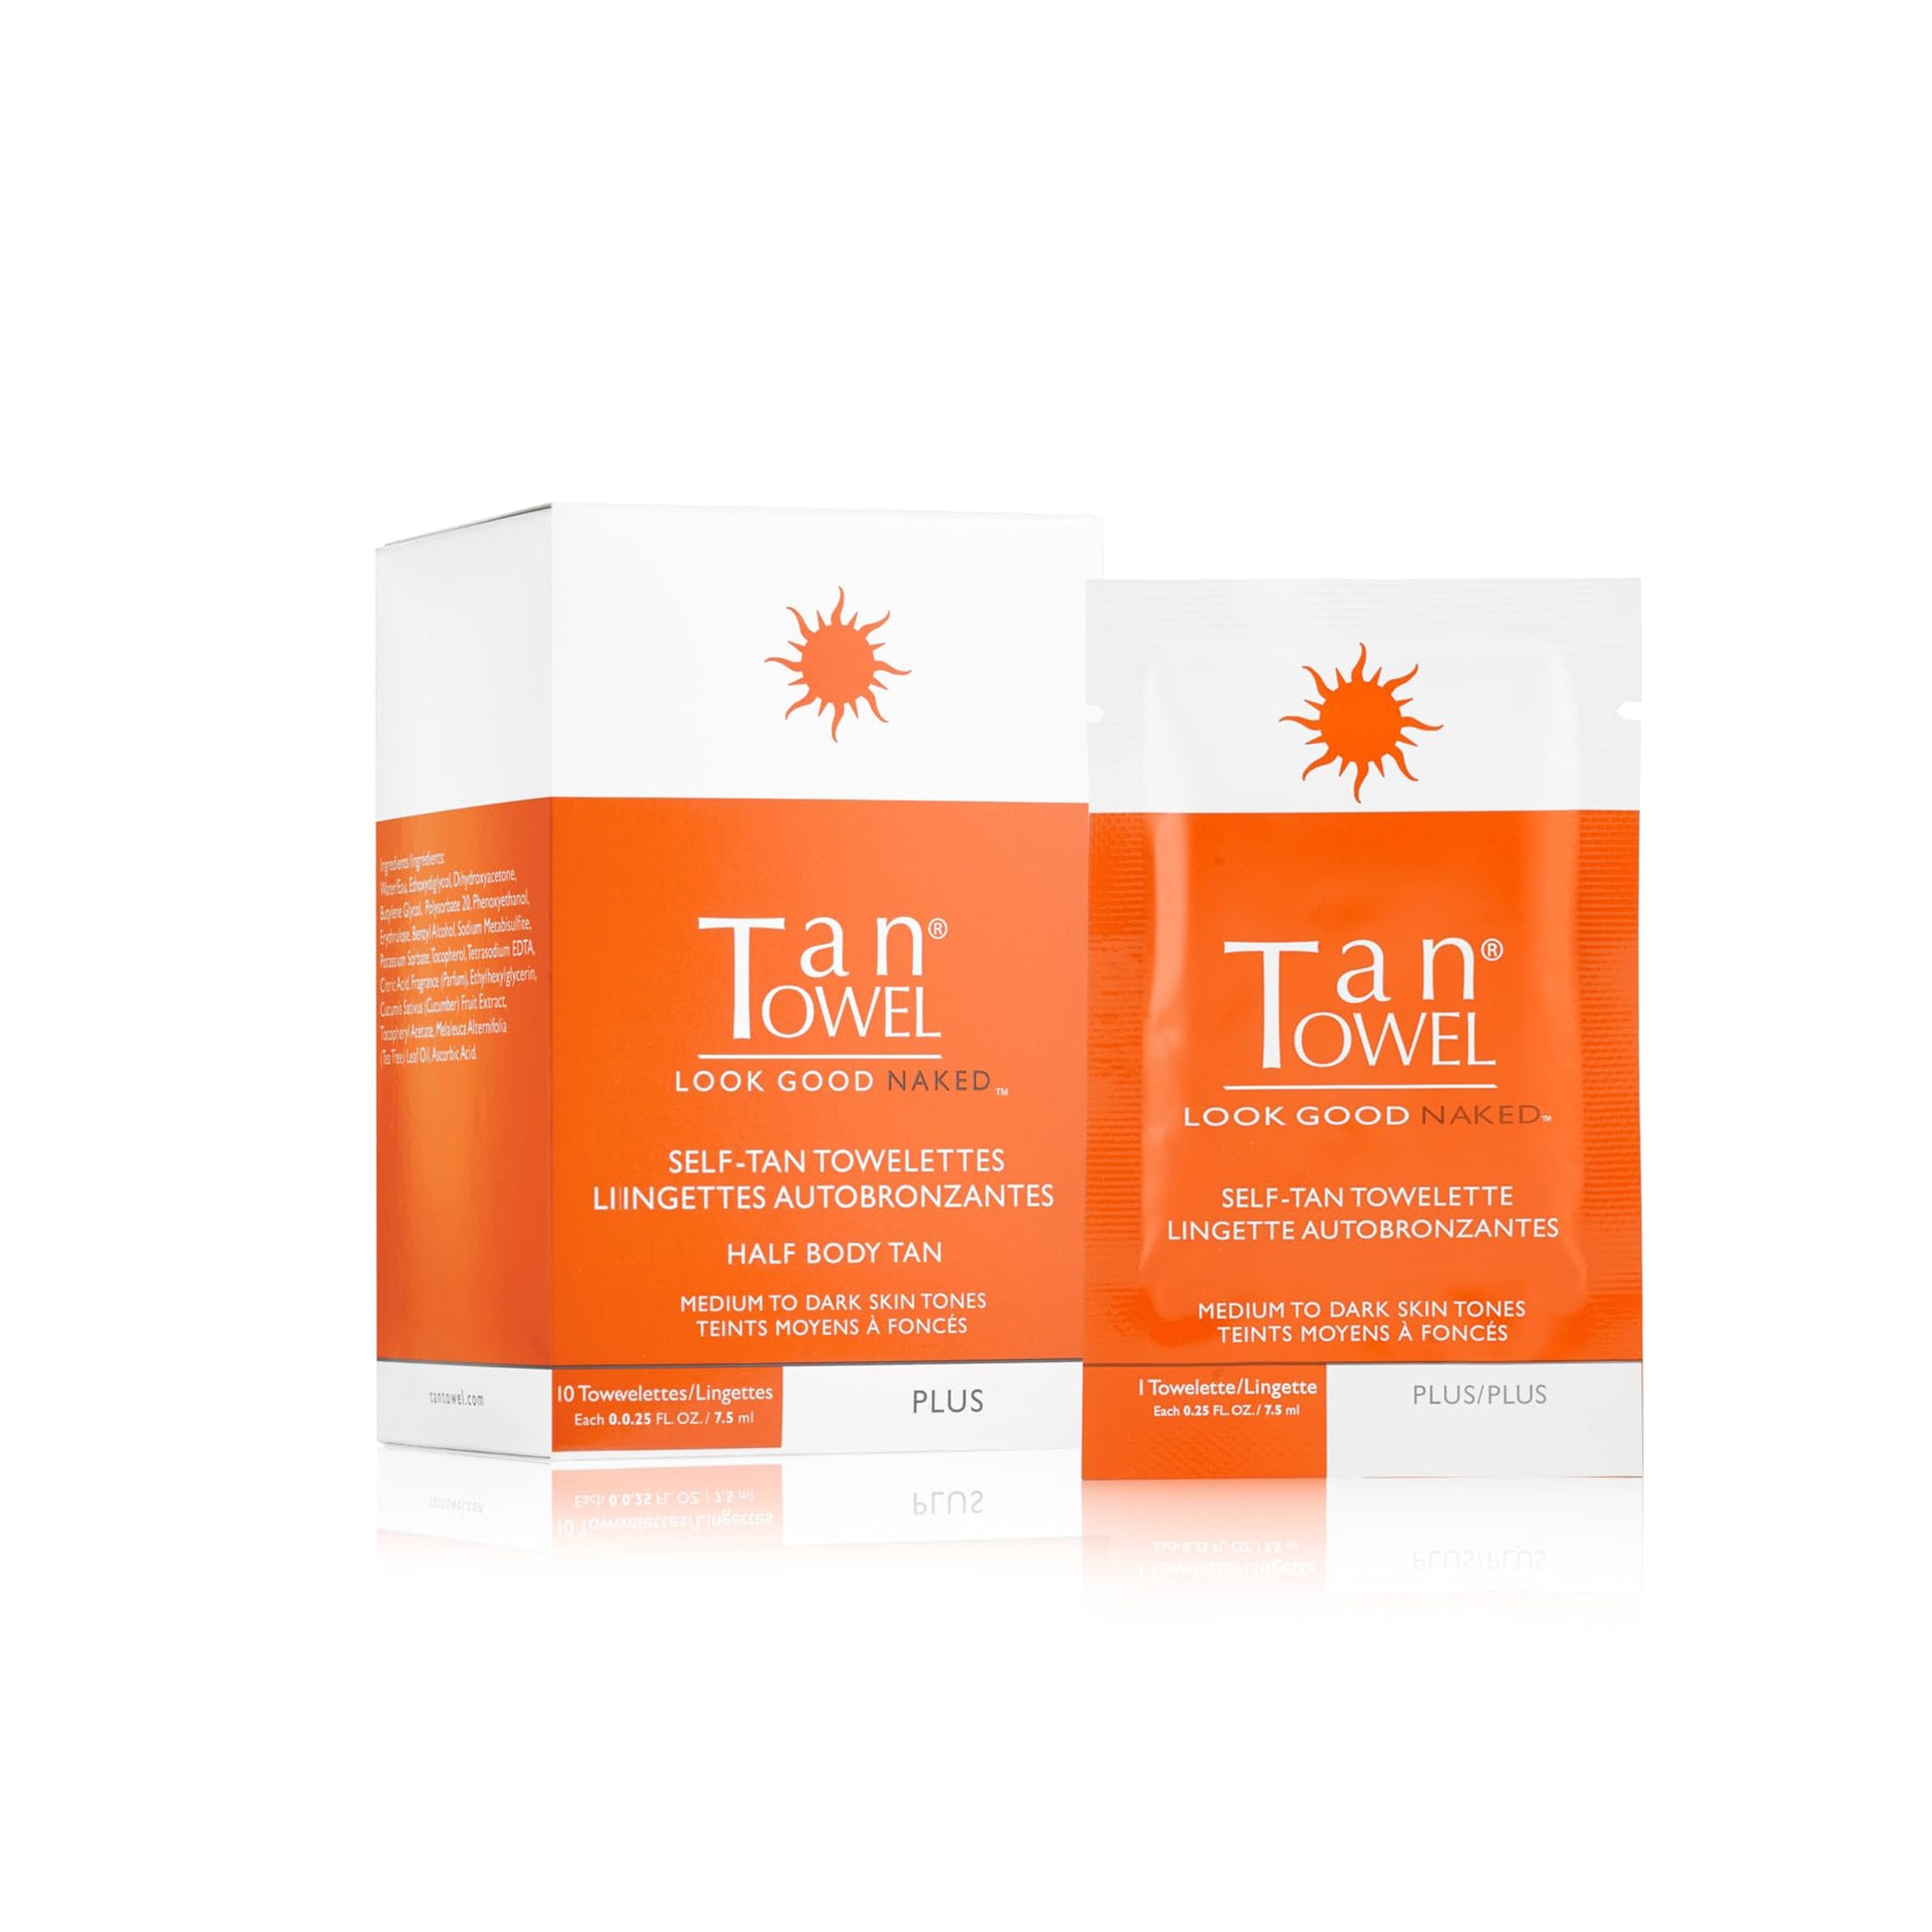 Tan Towel Body Tan Towelettes - Half Body 10 Pack / PLUS